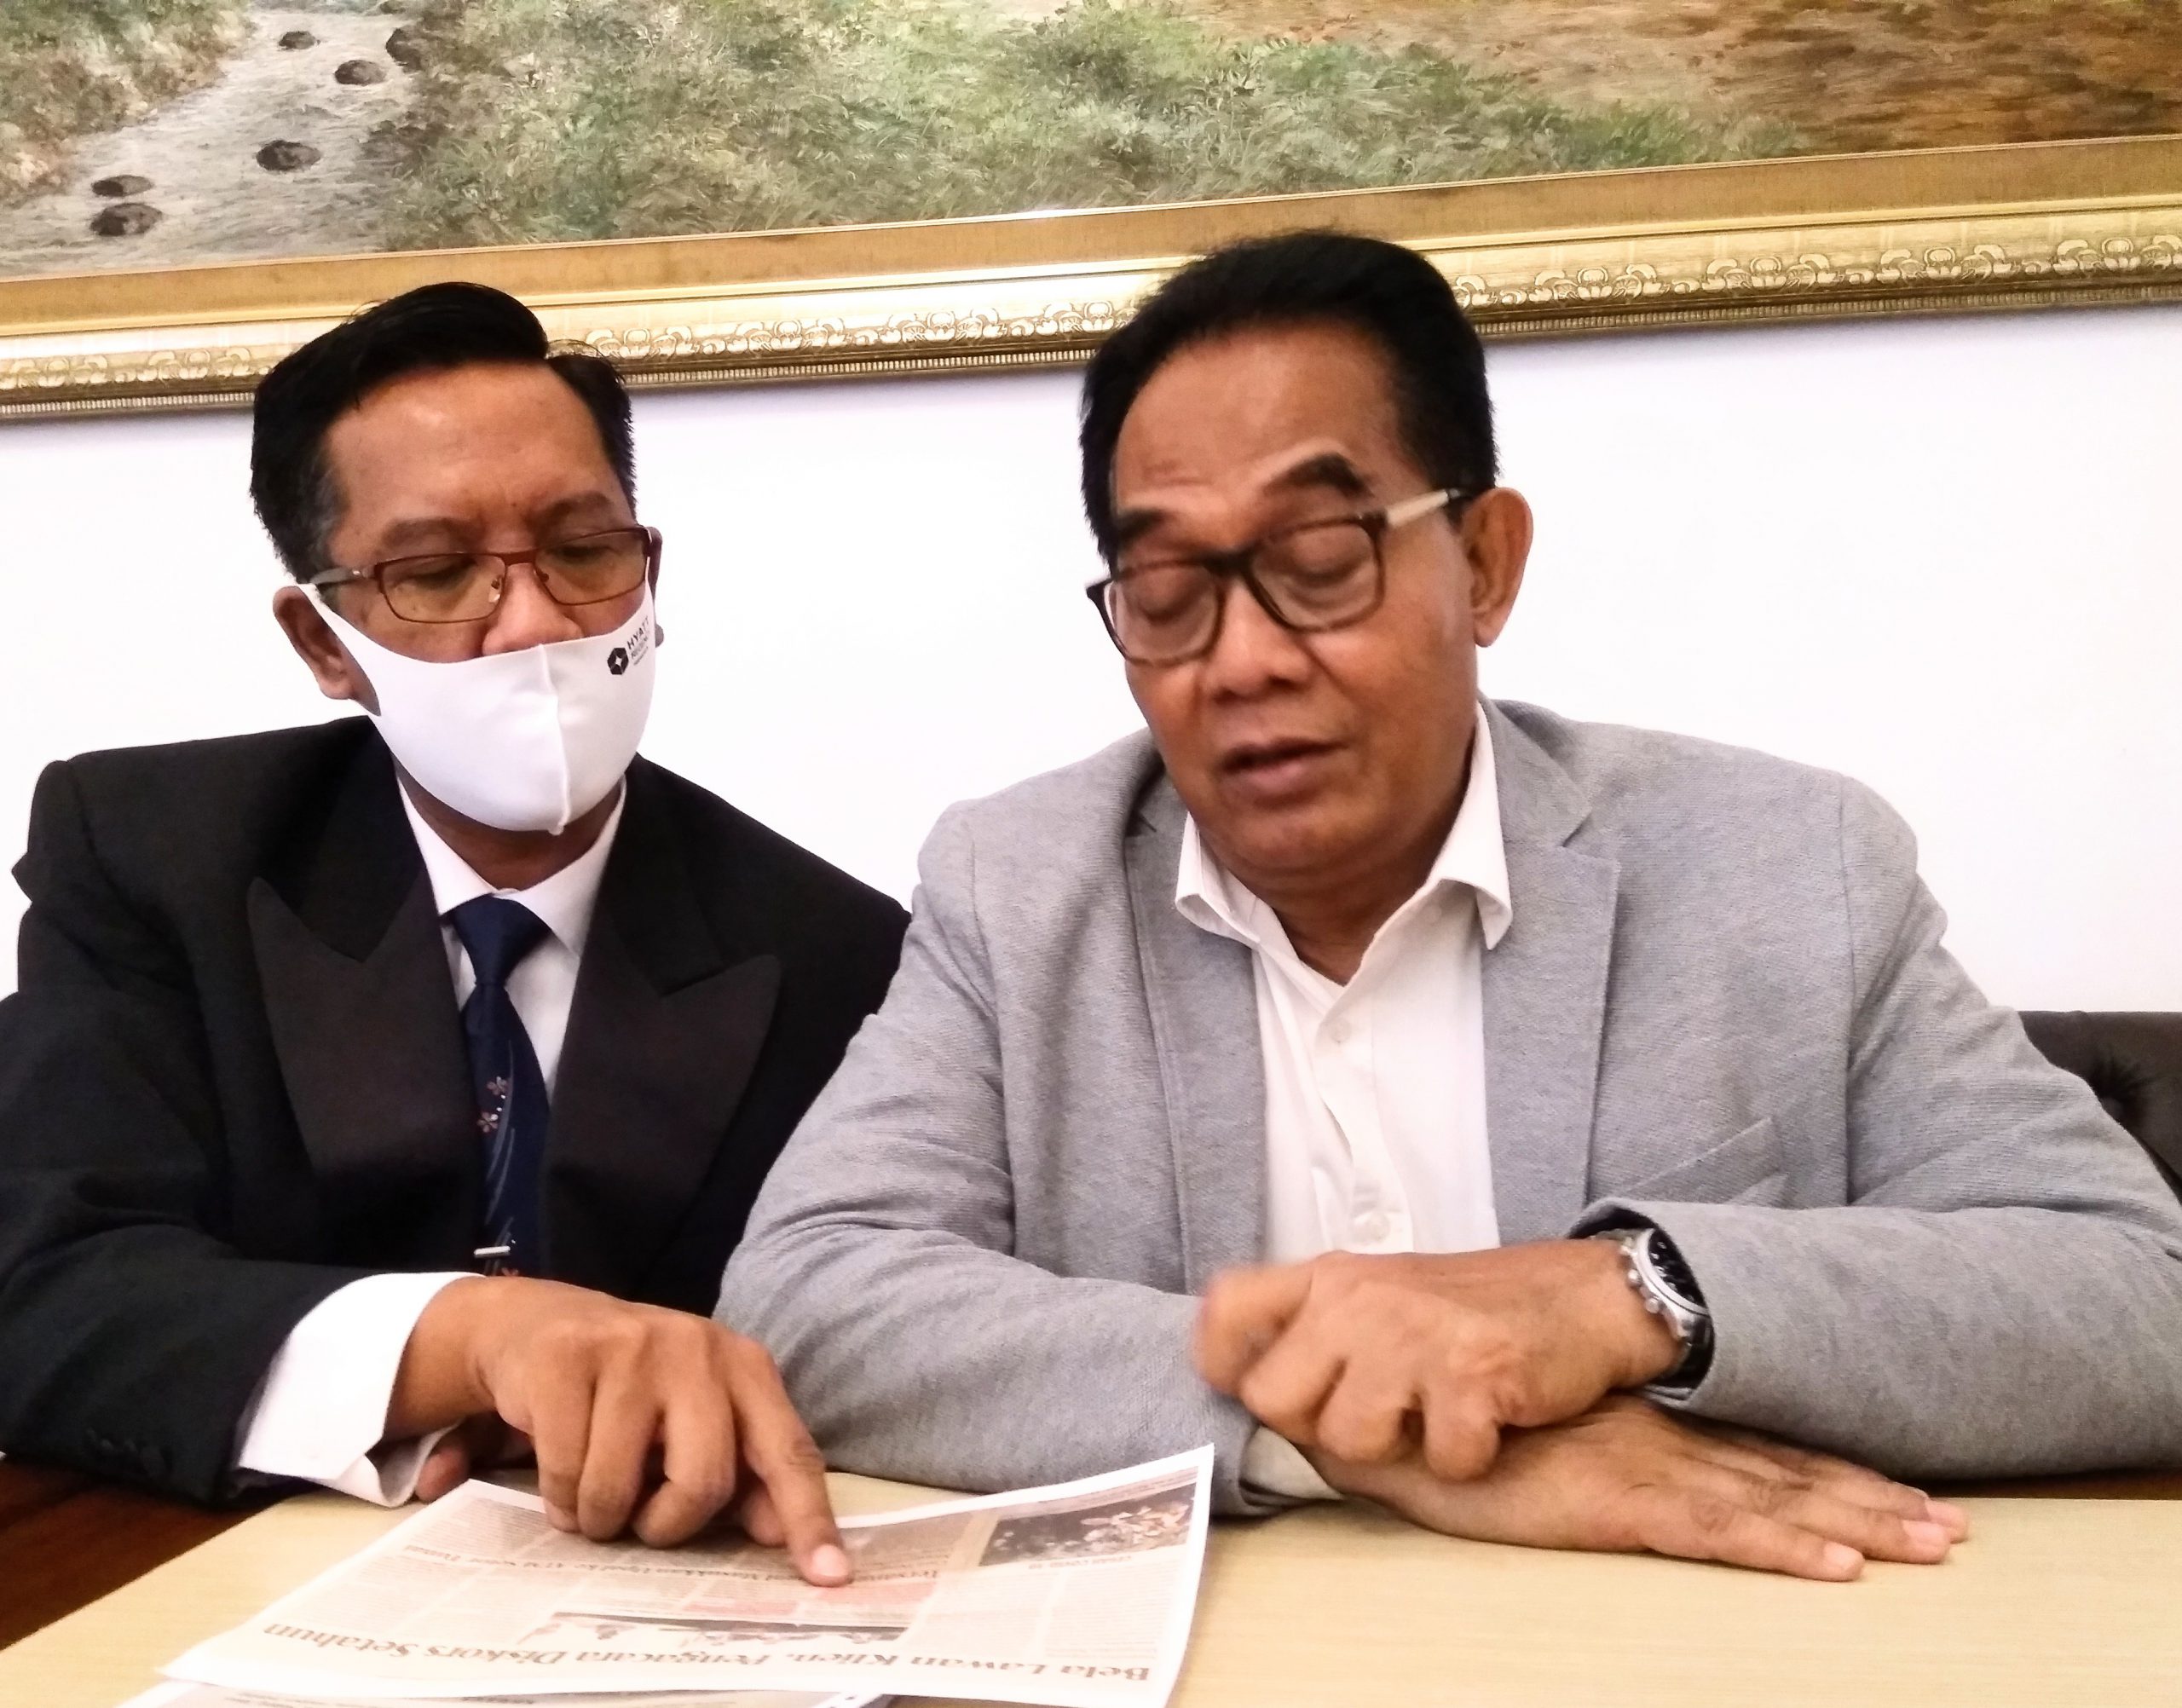 Masbuhin (KIRI PAKAI JAS HITAM) dan Purwanto, salah satu advokat senior di Surabaya, yang mendampingi Masbuhin selama berurusan dengan DK Peradi Jatim. (FOTO : parlin/surabayaupdate.com)